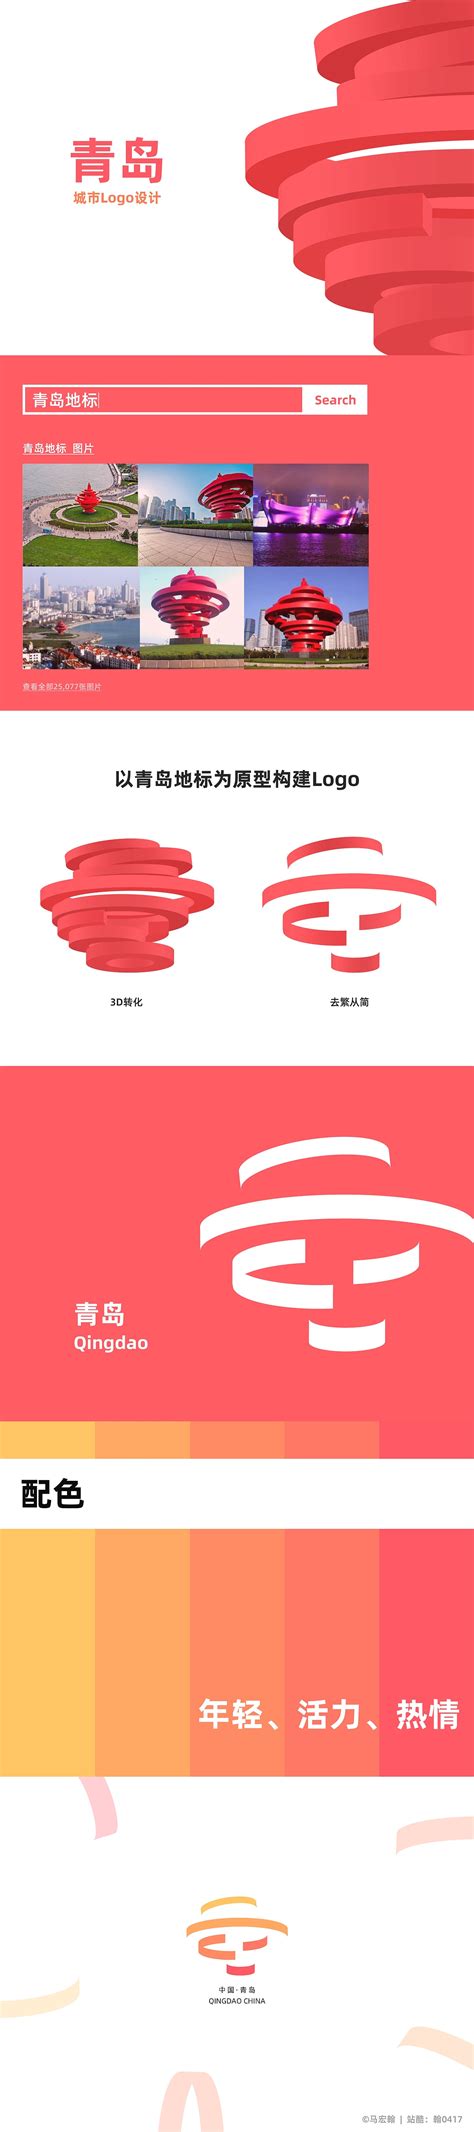 青岛logo设计制作_宣传册设计印刷_名片设计-青岛新视点网络